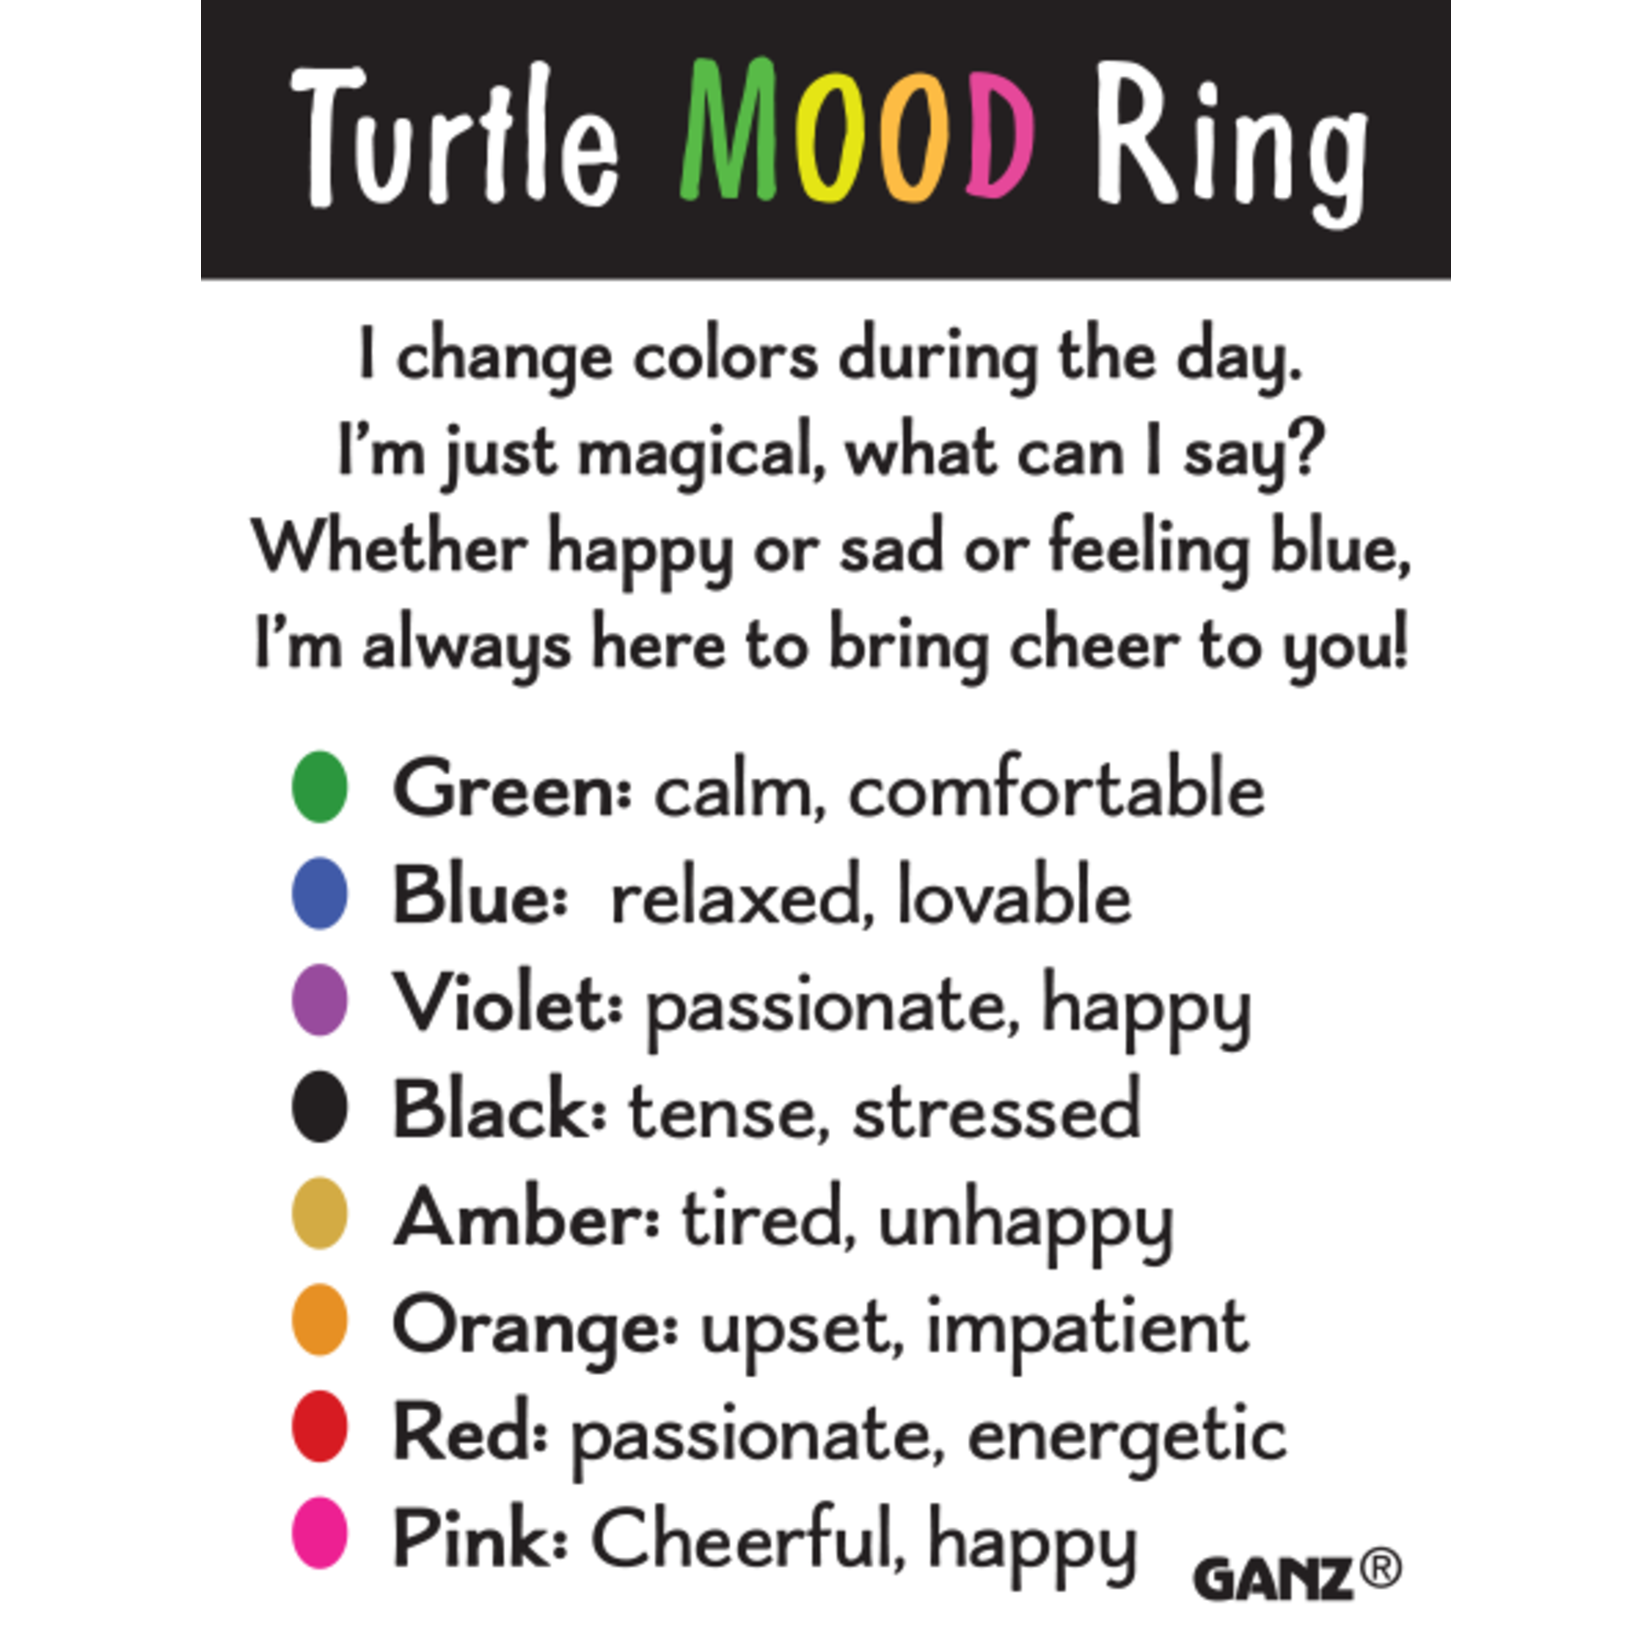 Turtle Mood Ring